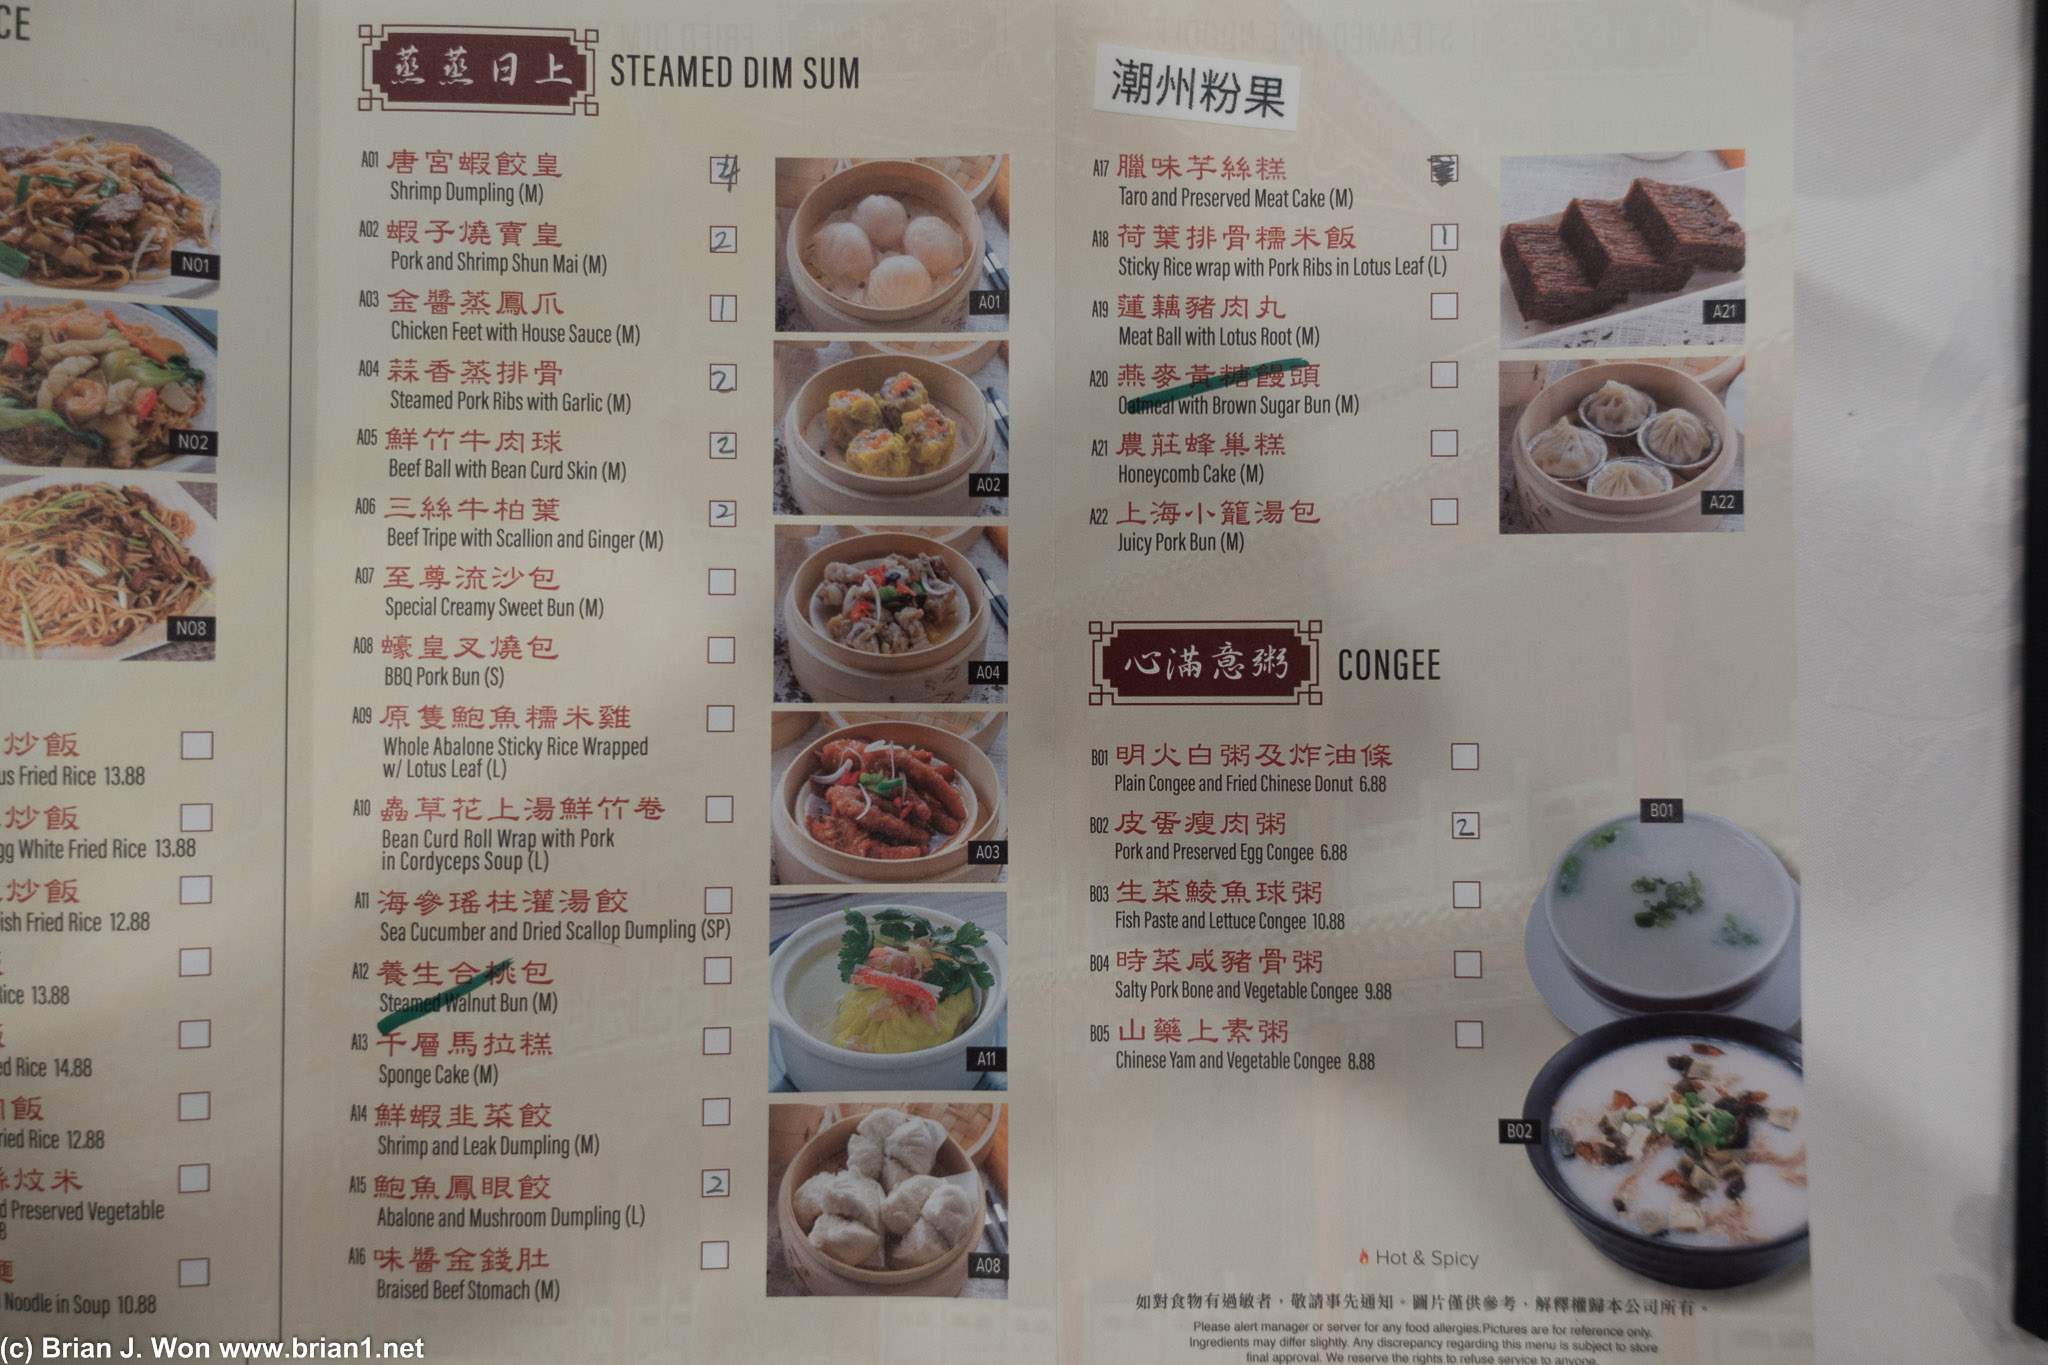 The menu at Tang Gong.